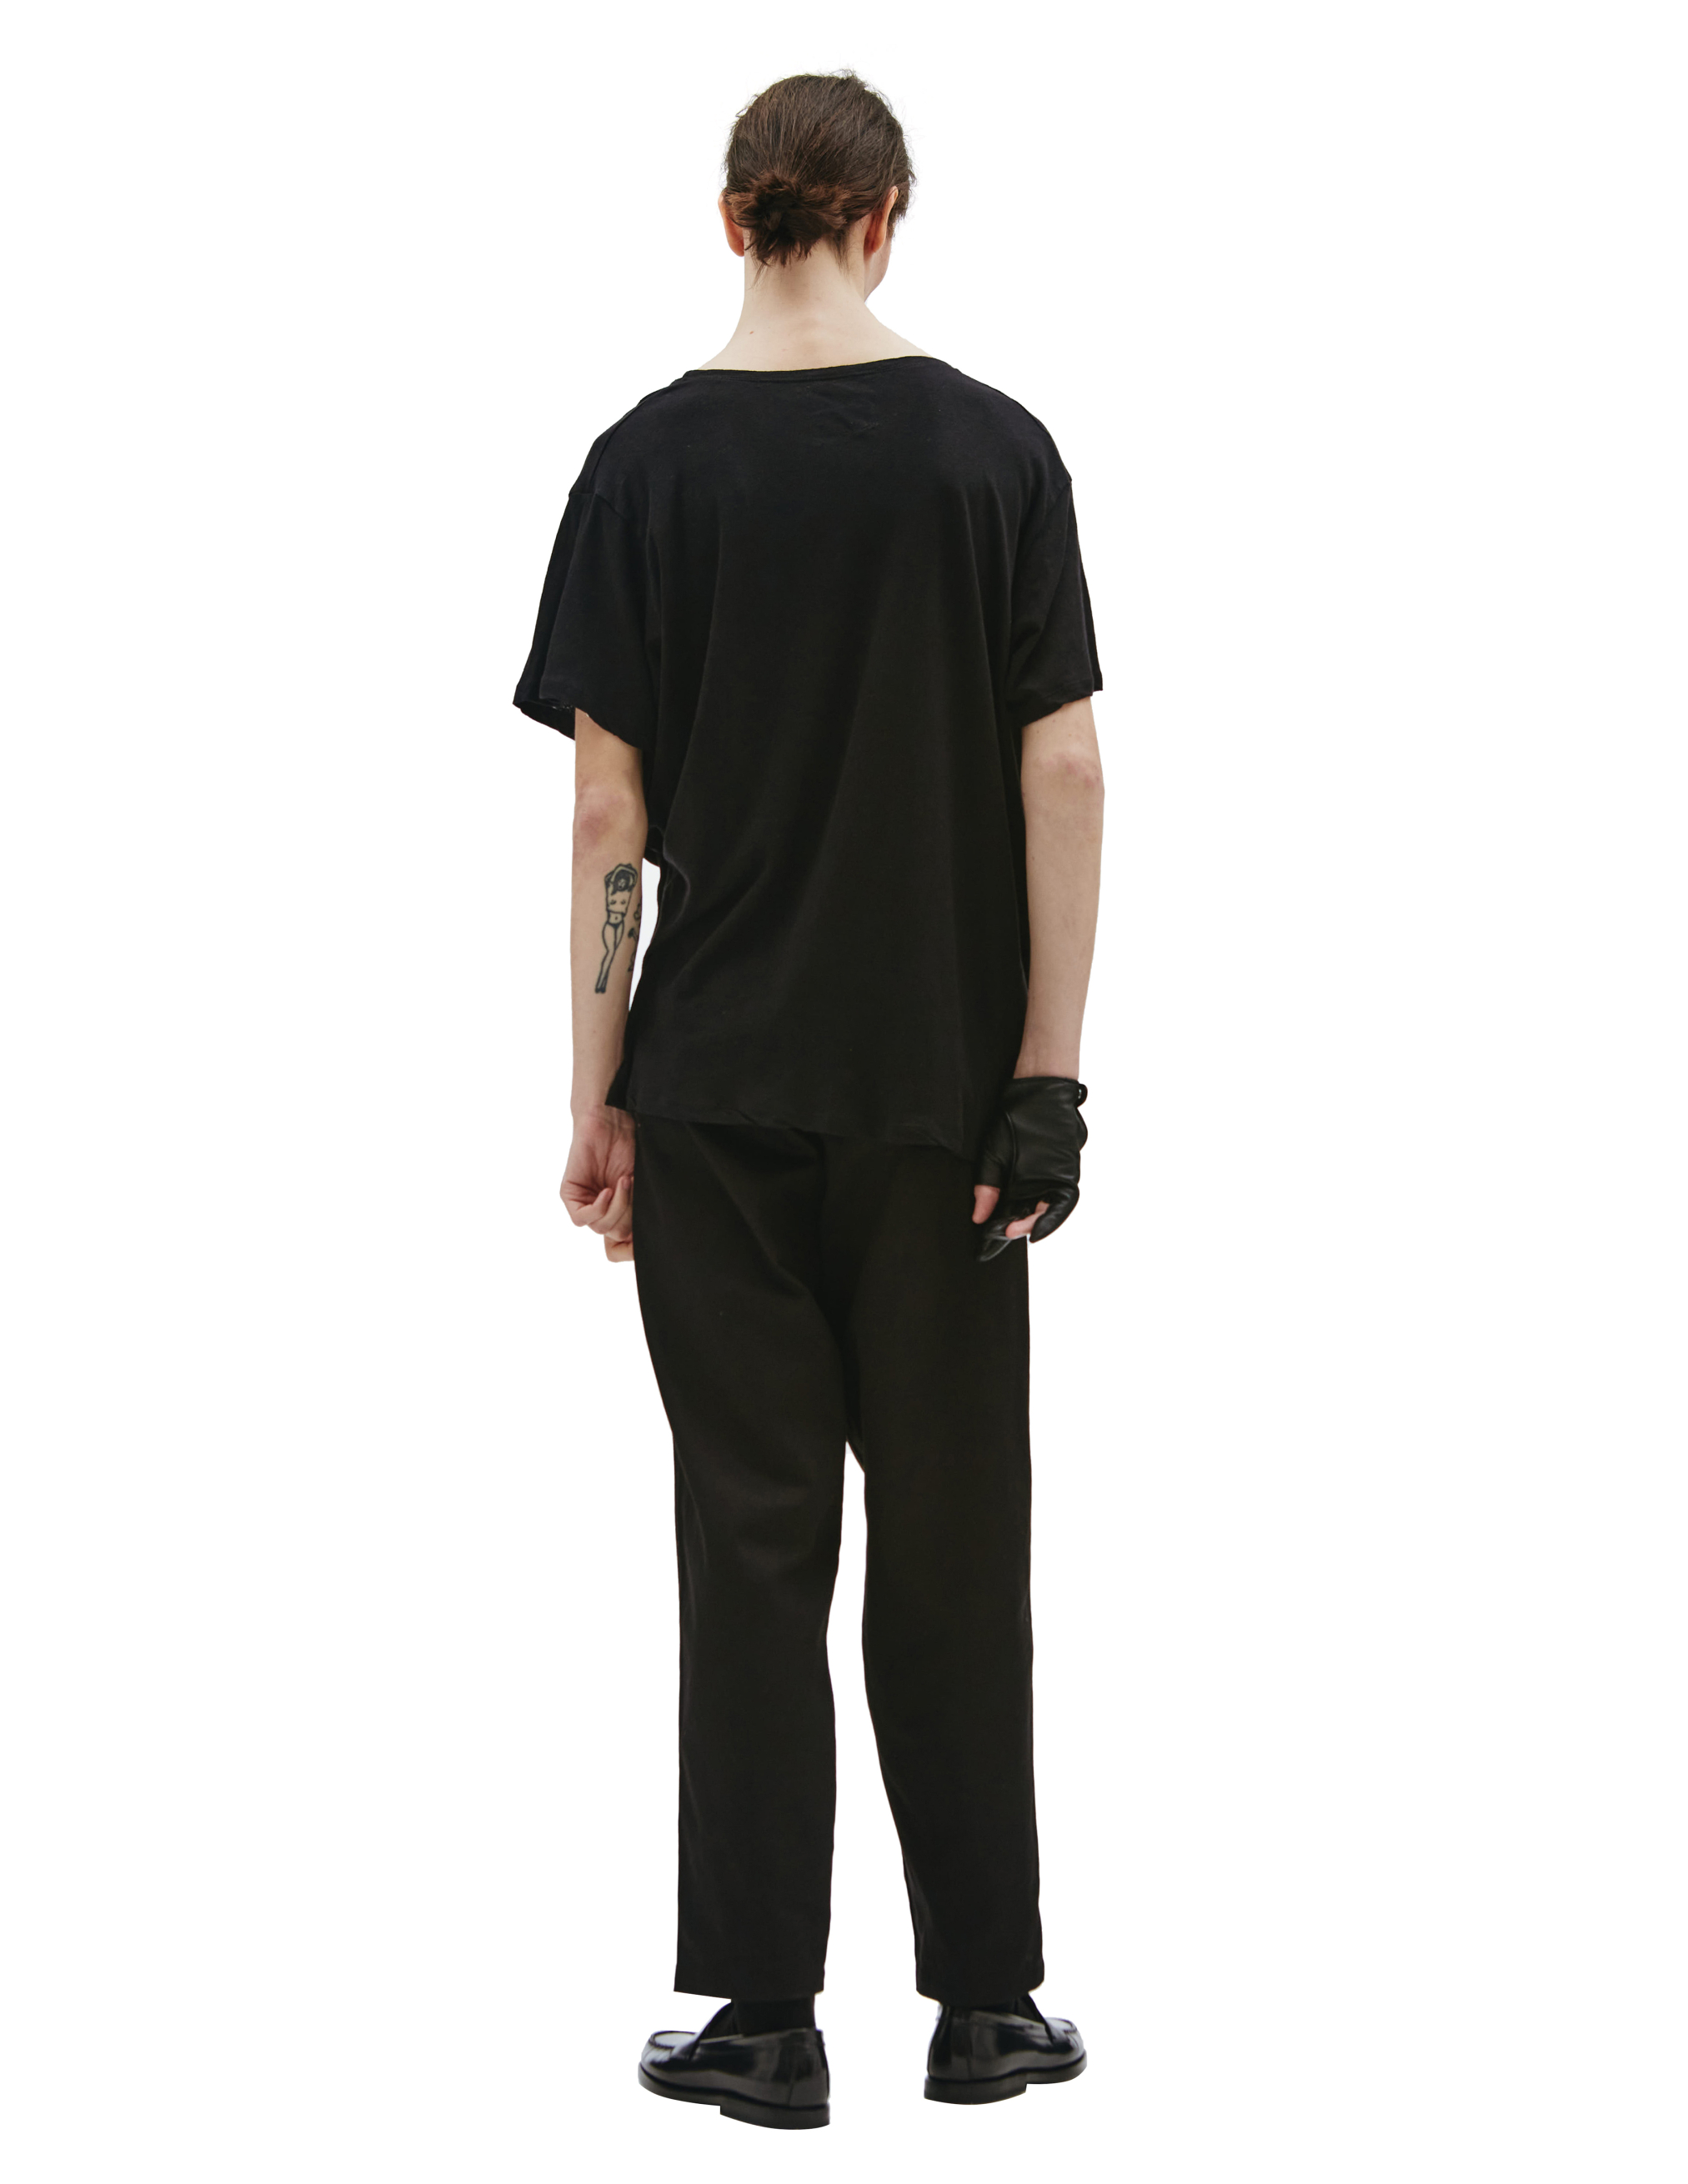 Черная базовая футболка из хлопка Greg Lauren DM159, размер 4 - фото 3